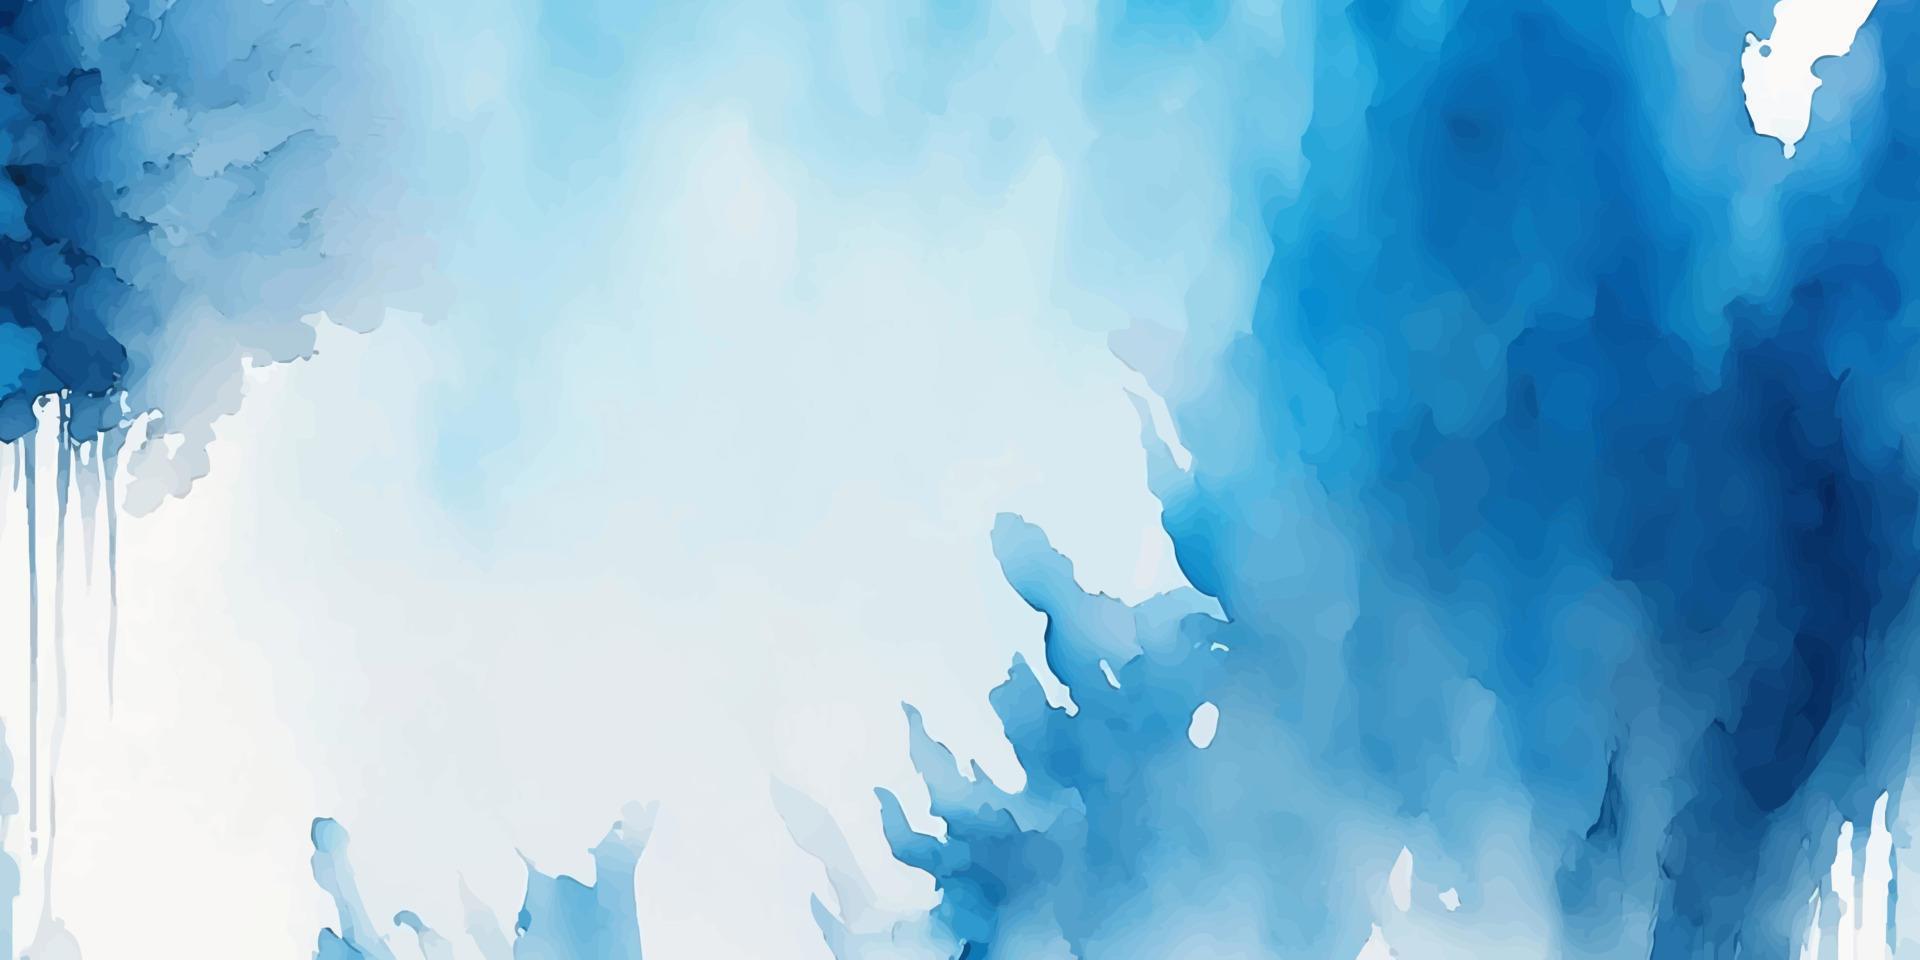 abstrato azul aguarela pano de fundo. artístico vetor ilustração para decorativo Projeto do fundo, cabeçalho, folheto, poster, cartão, cobrir ou bandeira